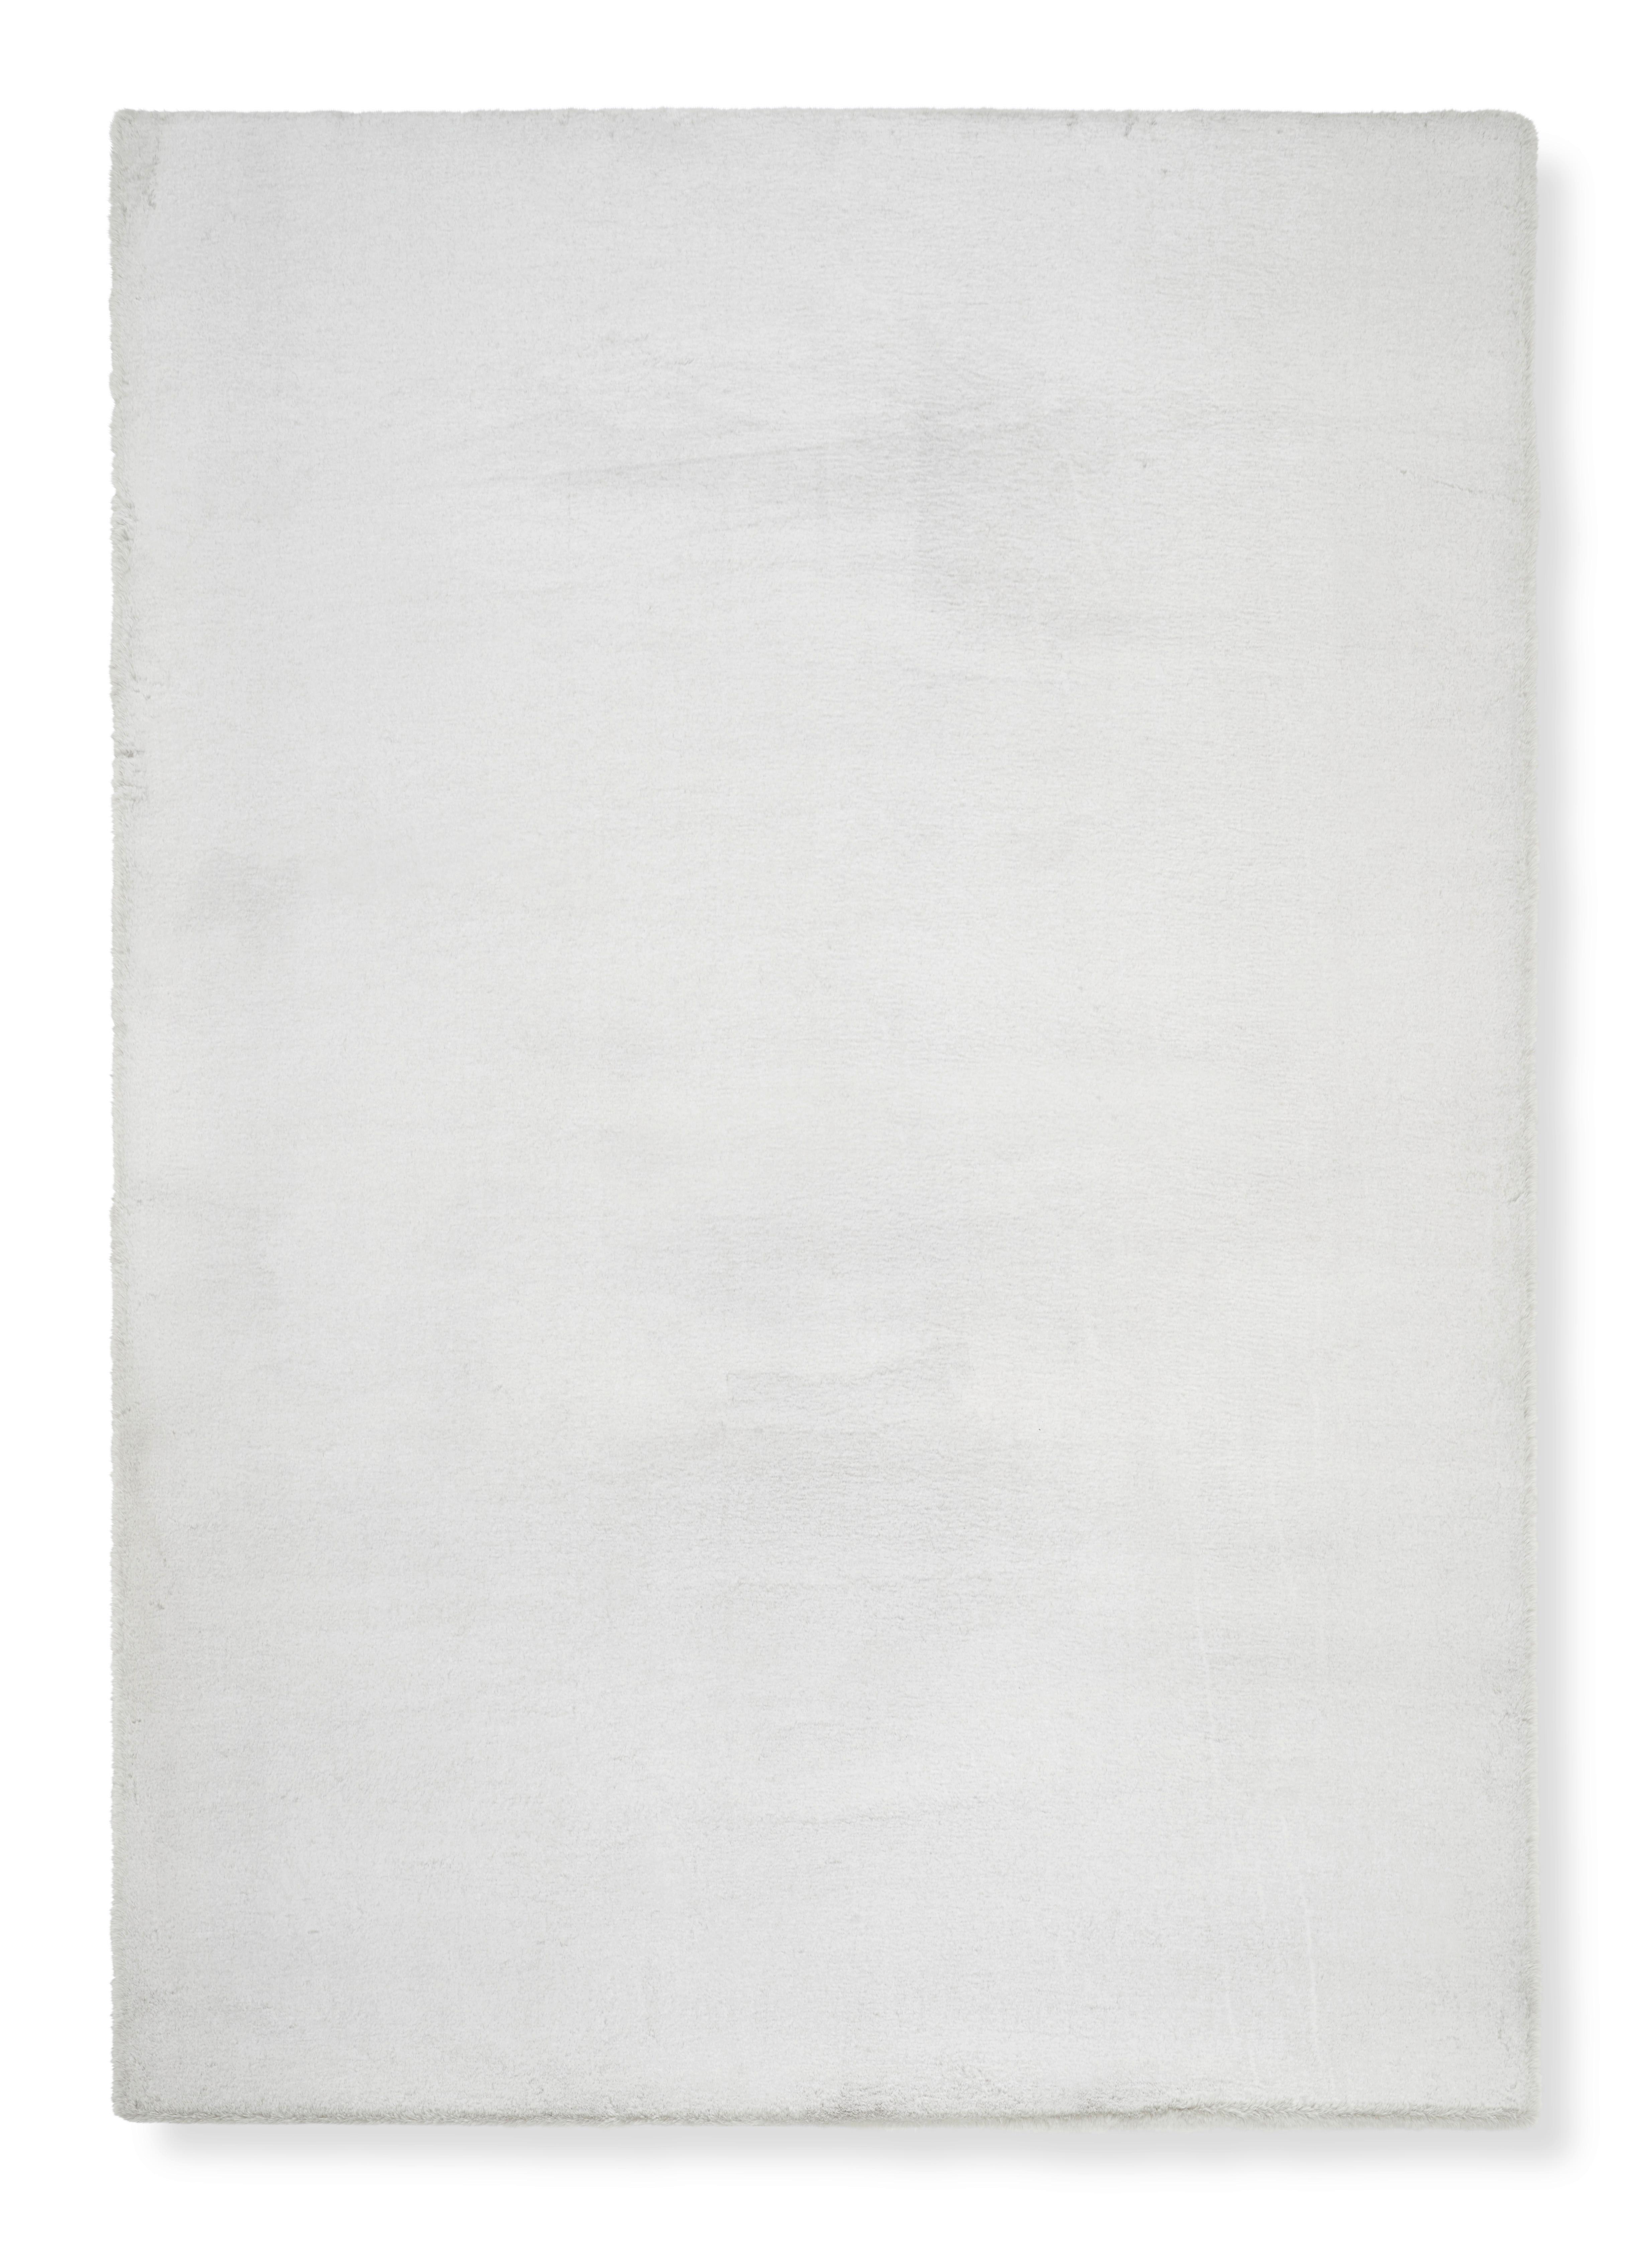 Umělá Kožešina Denise 1, 80/150cm, Stříbrná - bílá/barvy stříbra, Romantický / Rustikální, kožešina/textil (80/150cm) - Modern Living